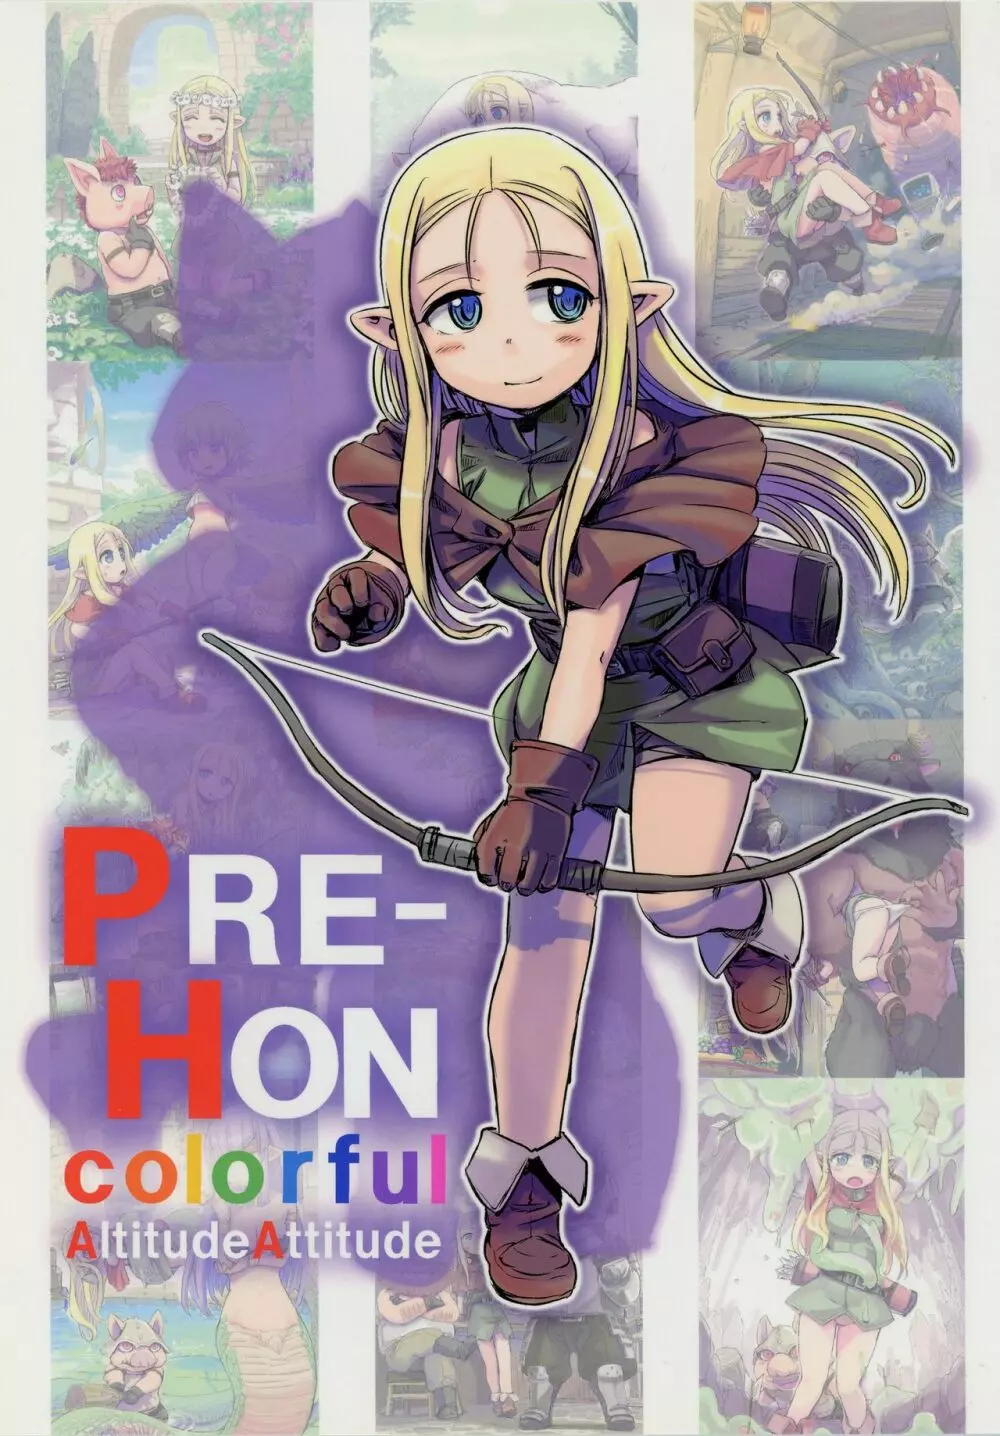 PRE-HON colorful 1ページ